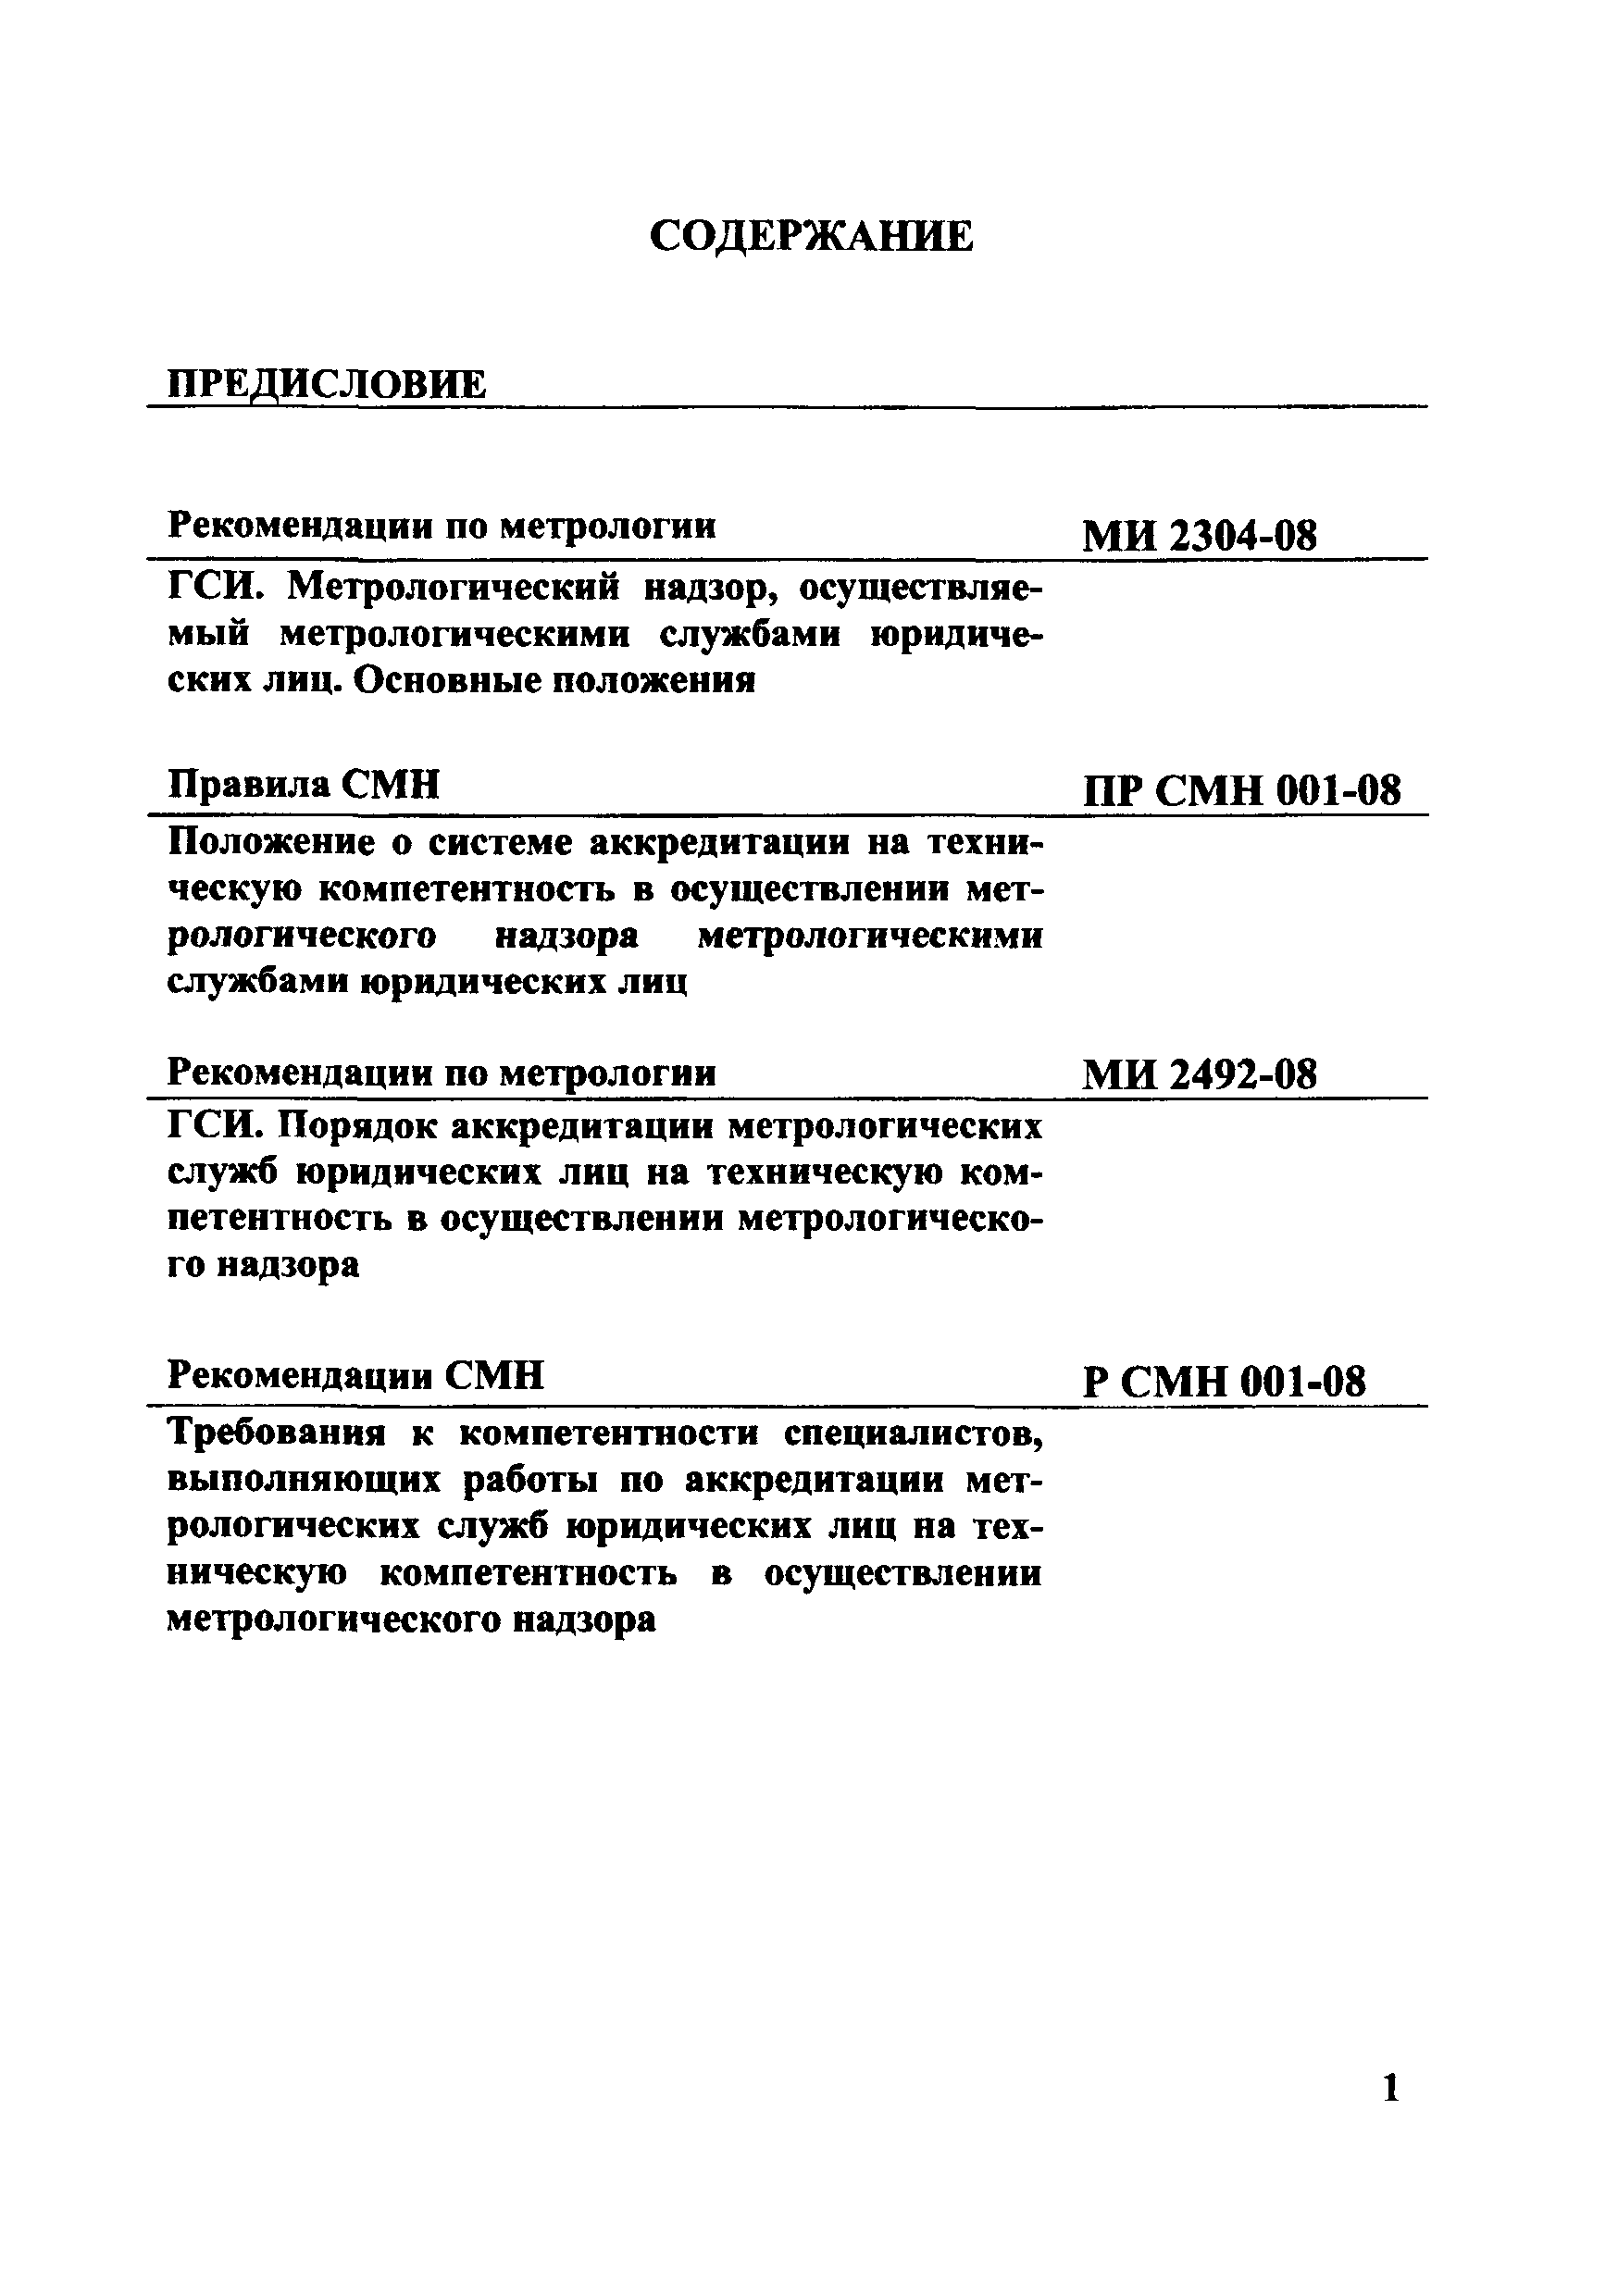 Р СМН 001-08